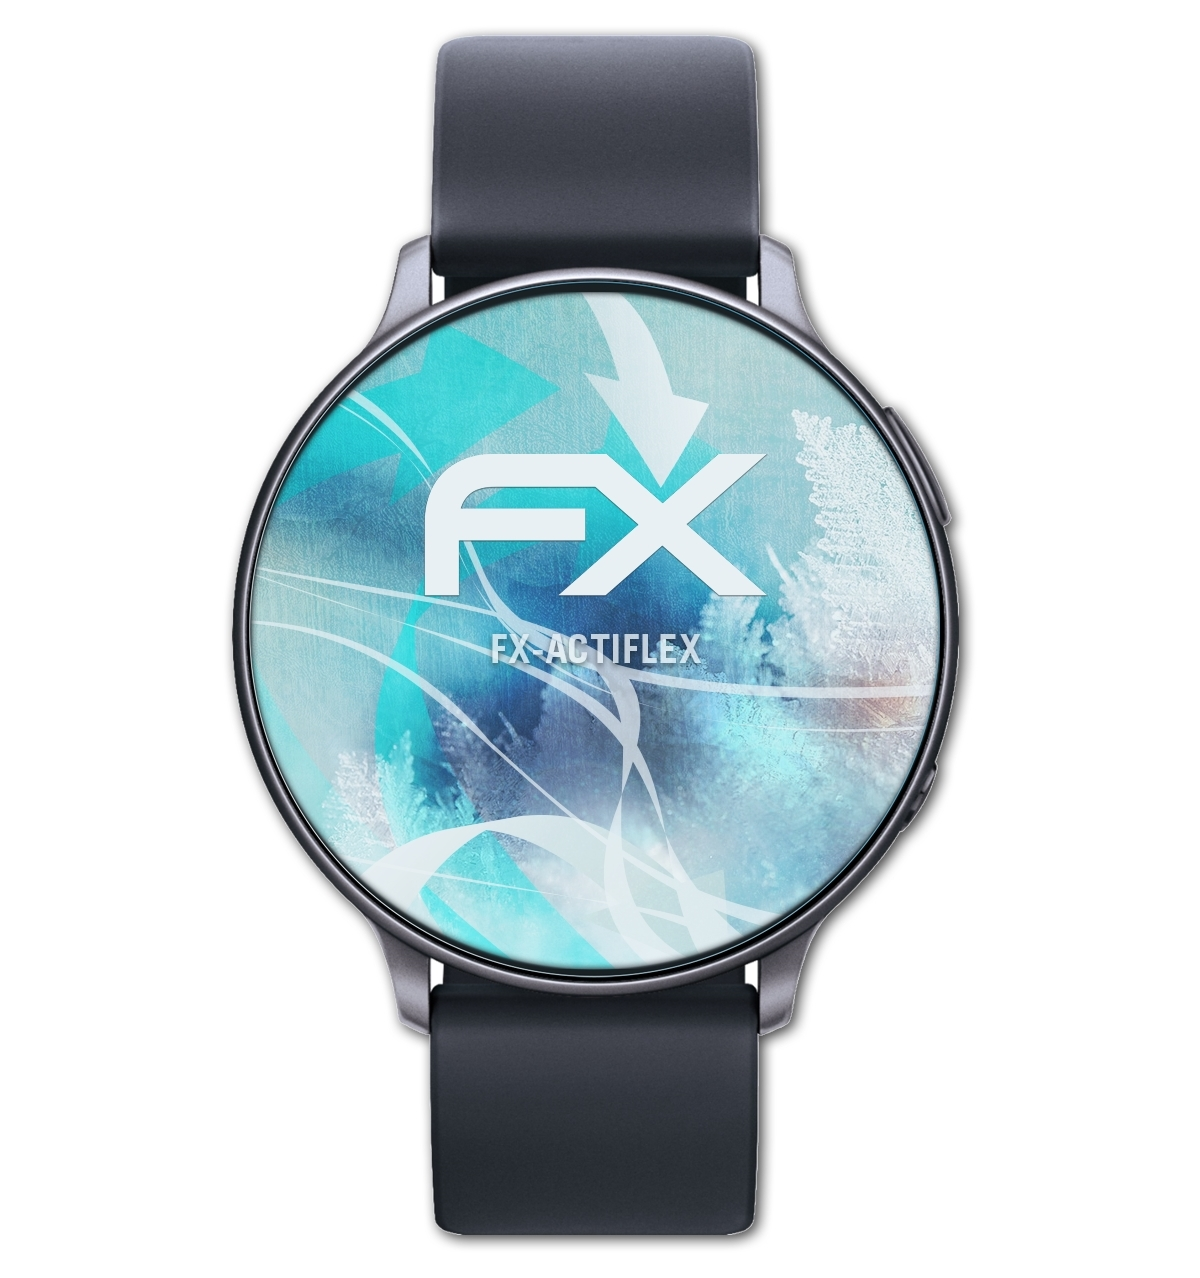 Smartwatch (38mm)) ATFOLIX Displayschutz(für 3x FX-ActiFleX Display